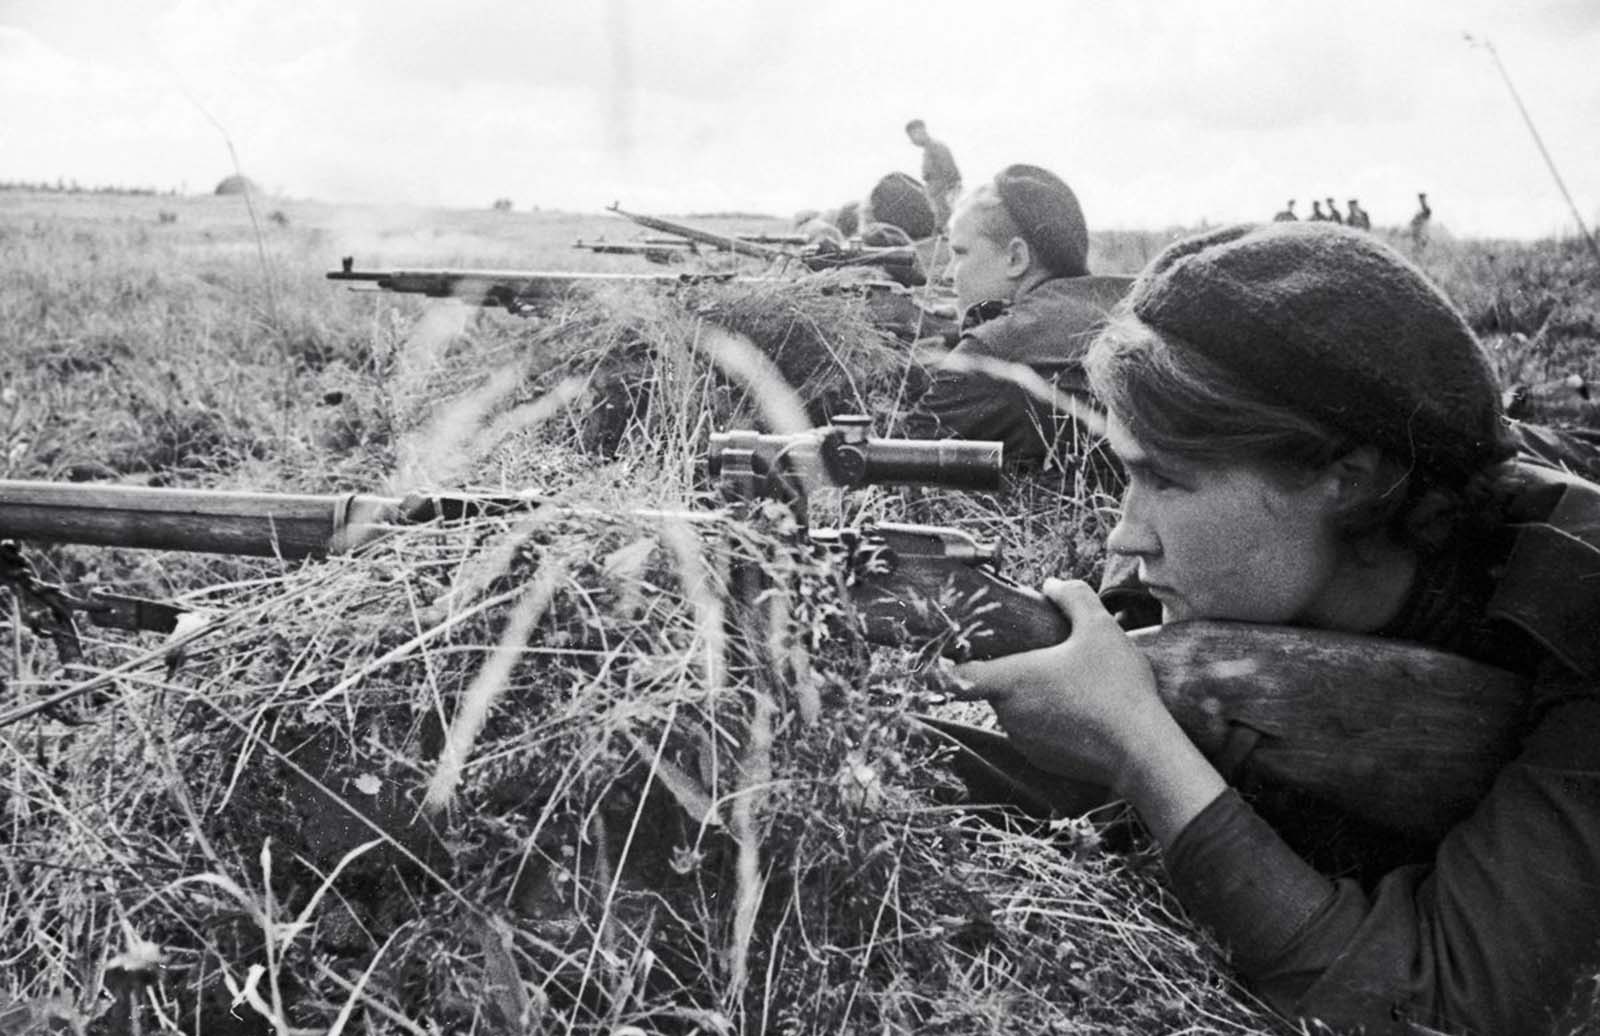 Le mortel Soviétique femmes tireurs d'élite, 1941-1945